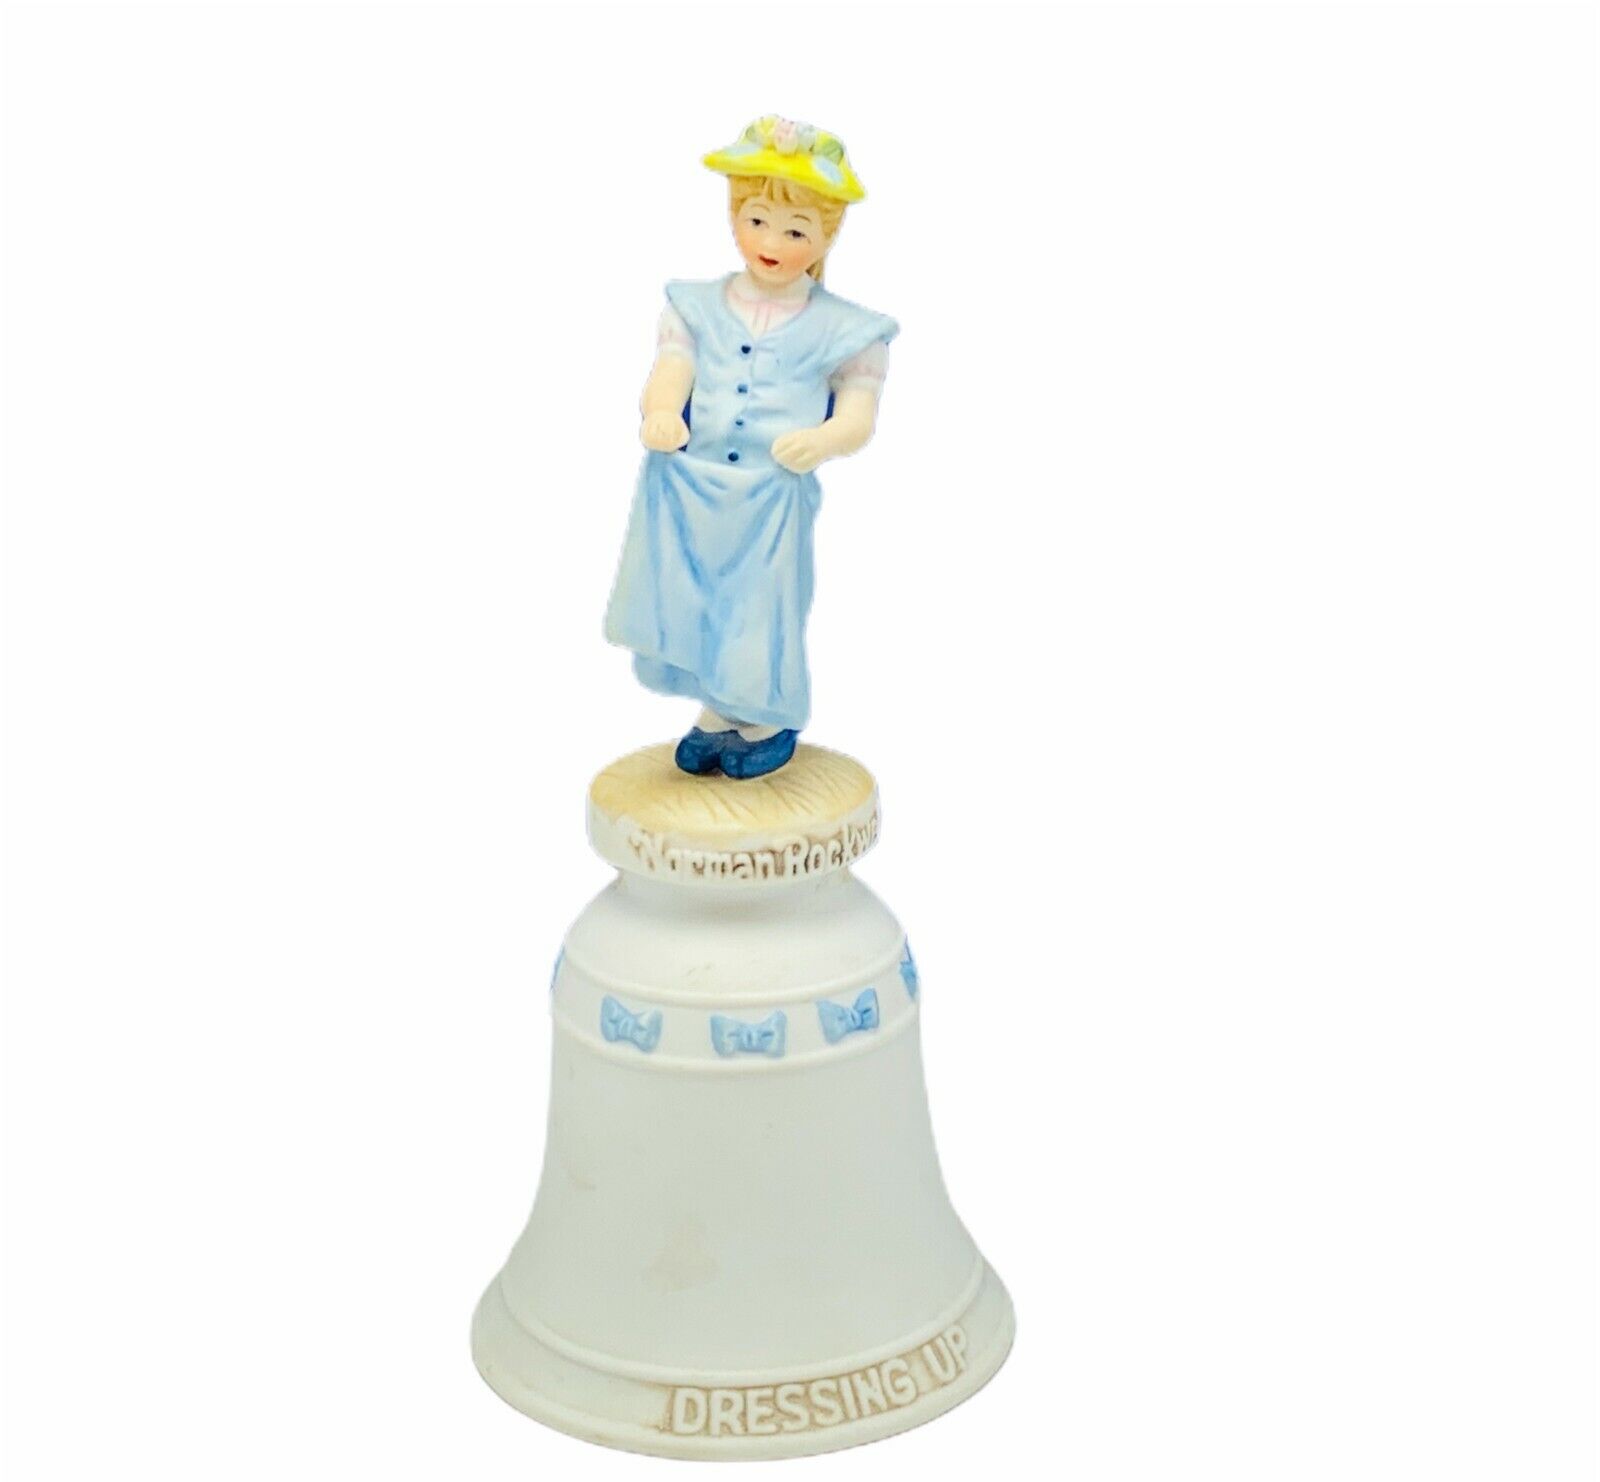 Norman Rockwell bell porcelain figurine vtg 1978 river shore Dressing Up limited